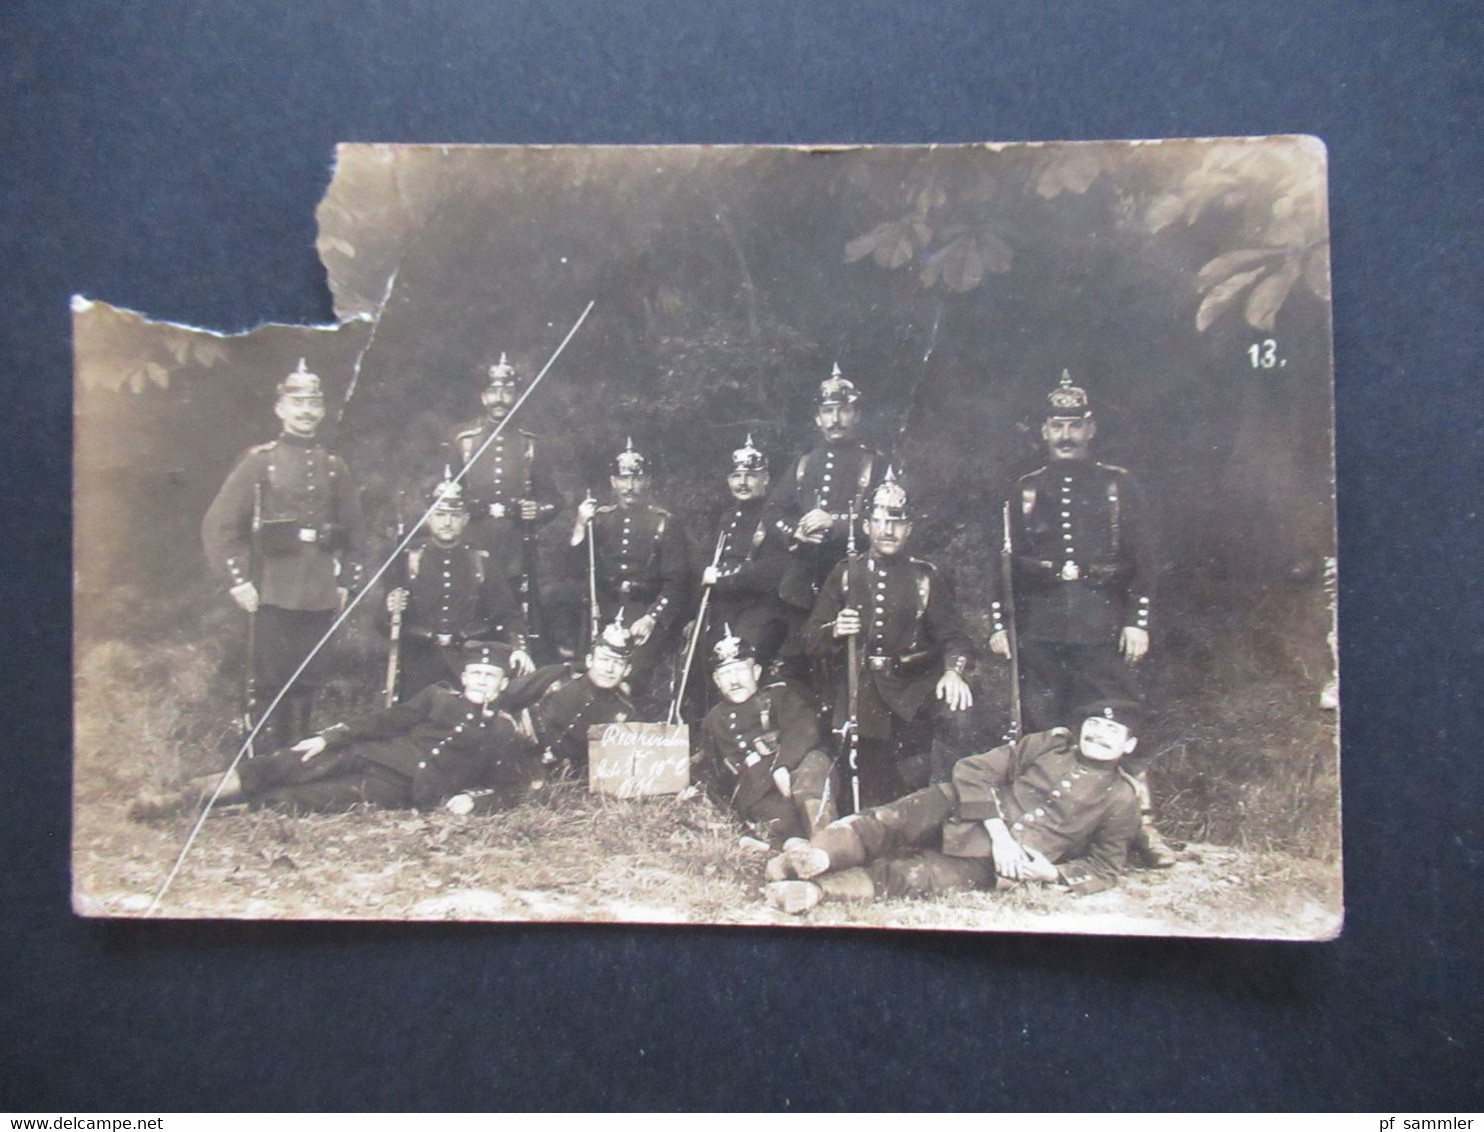 Echtfoto AK Soldaten In Voller Uniform Mit Pickelhaube Und Gewehr Reservisten 1911 Stempel Minden Westf. - Otras Guerras